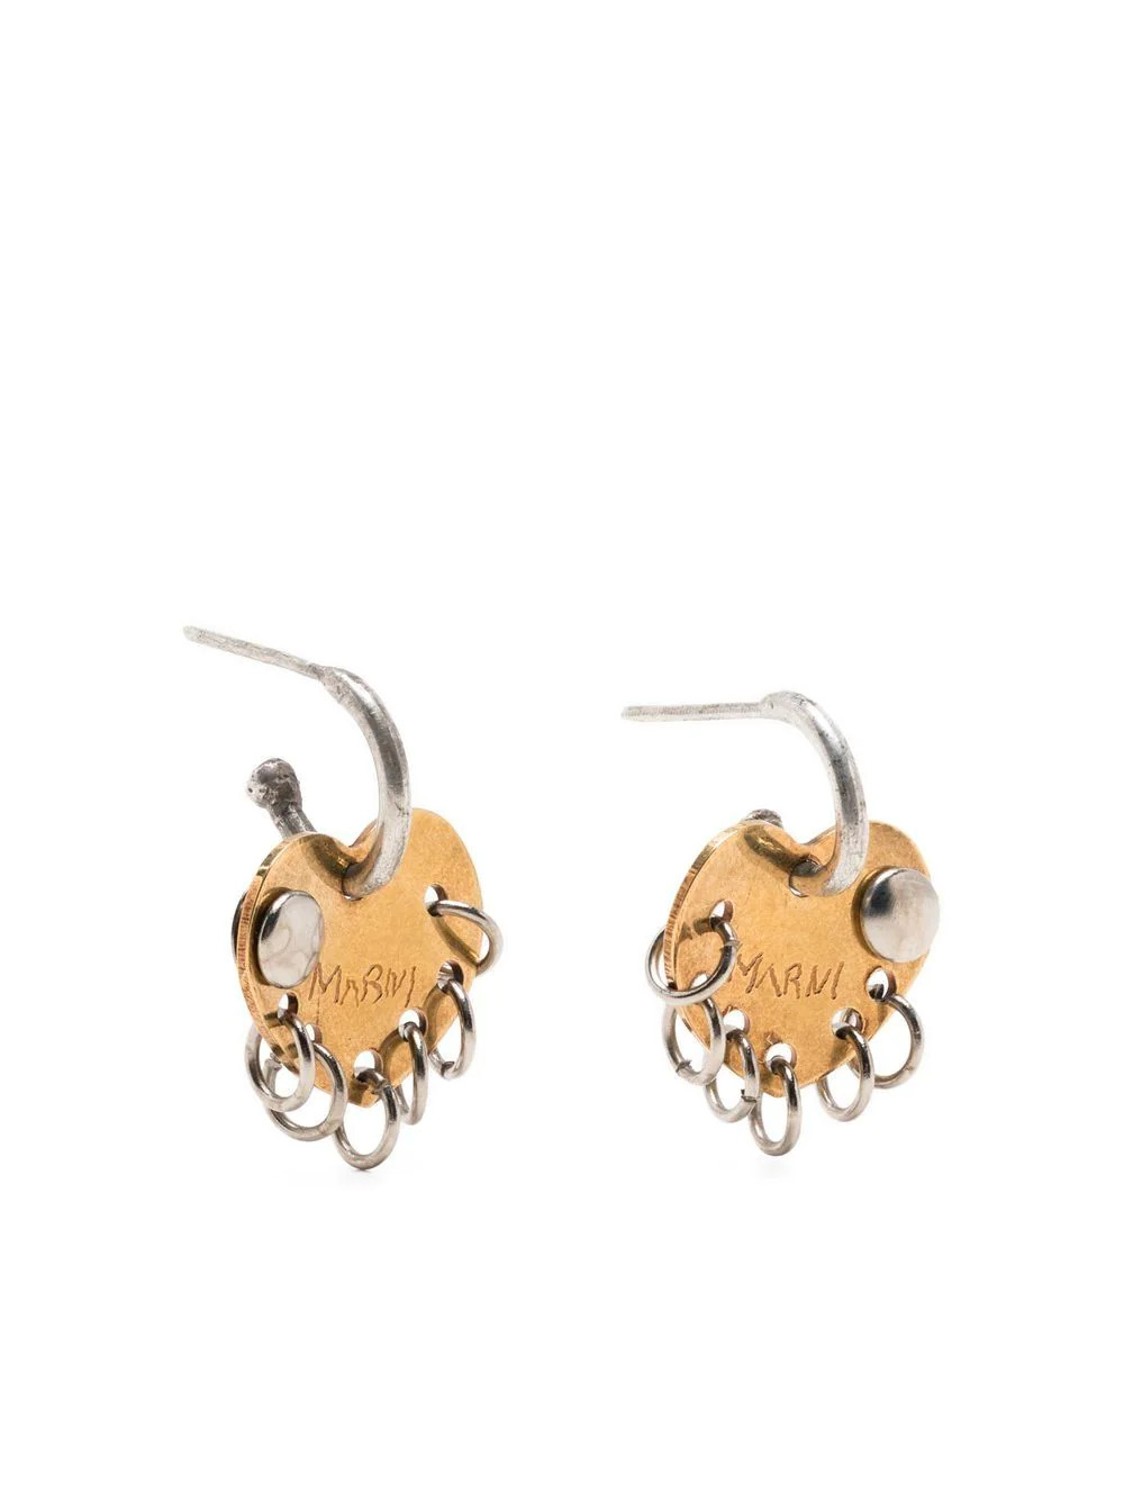 shop Marni  Bijoux: Bijoux Marni, orecchini, con cuore e piercing, in ottone e metallo, chiusura posteriore.

Composizione: 100% ottone. number 2455